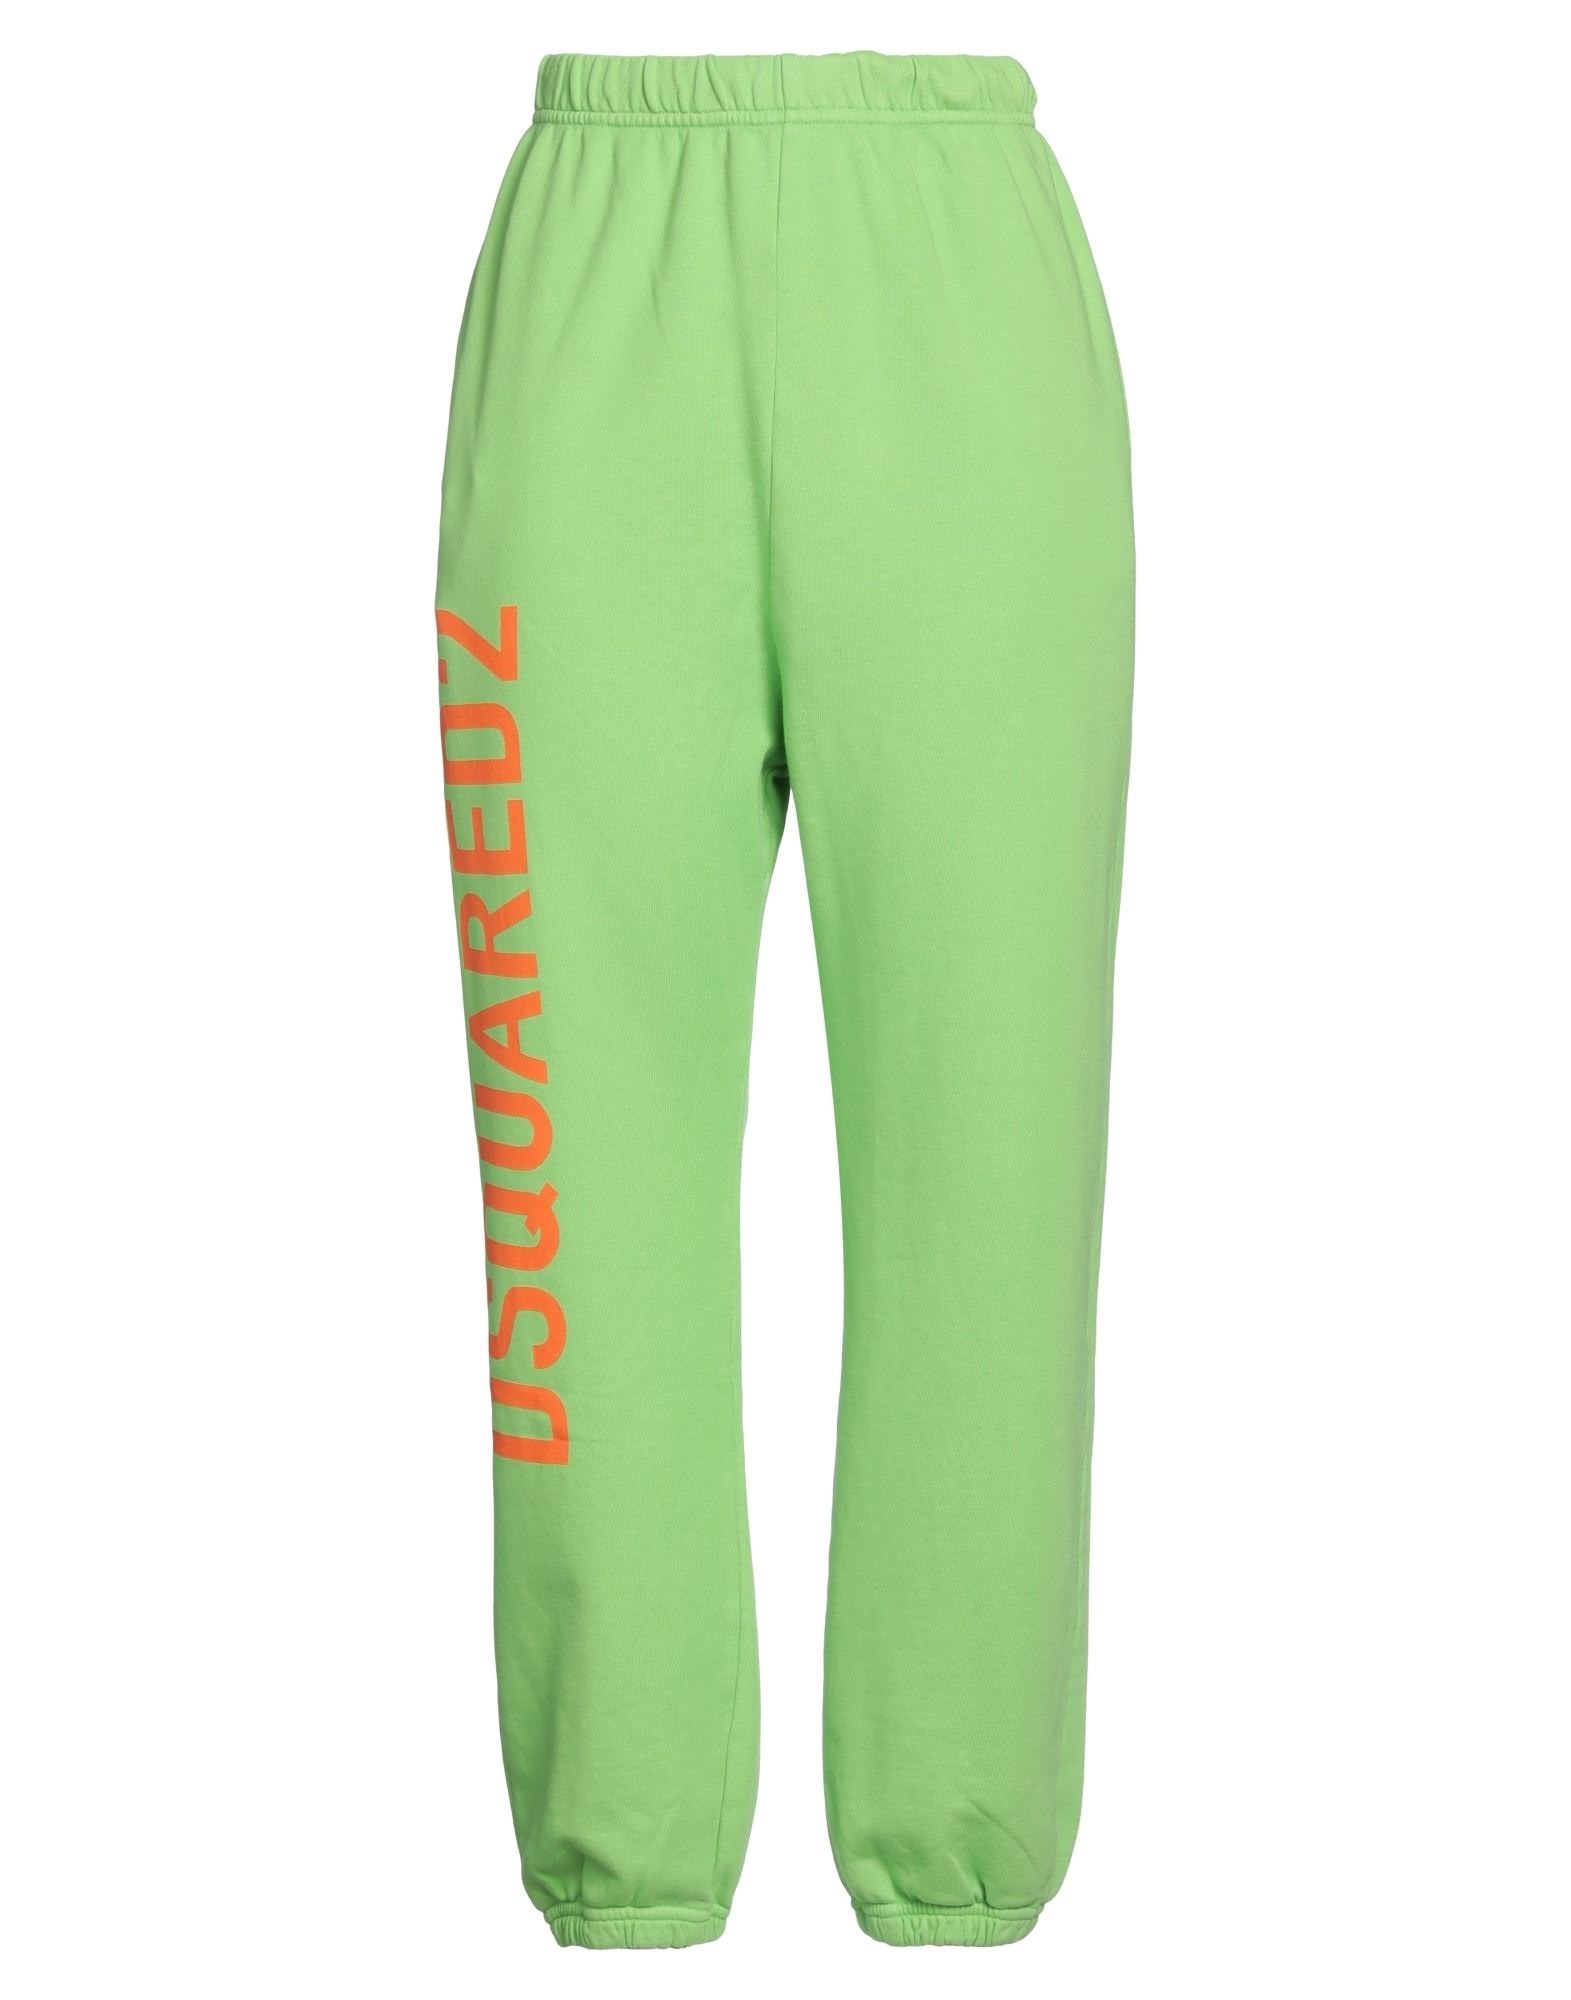 Green Women's Casual Pants - 1